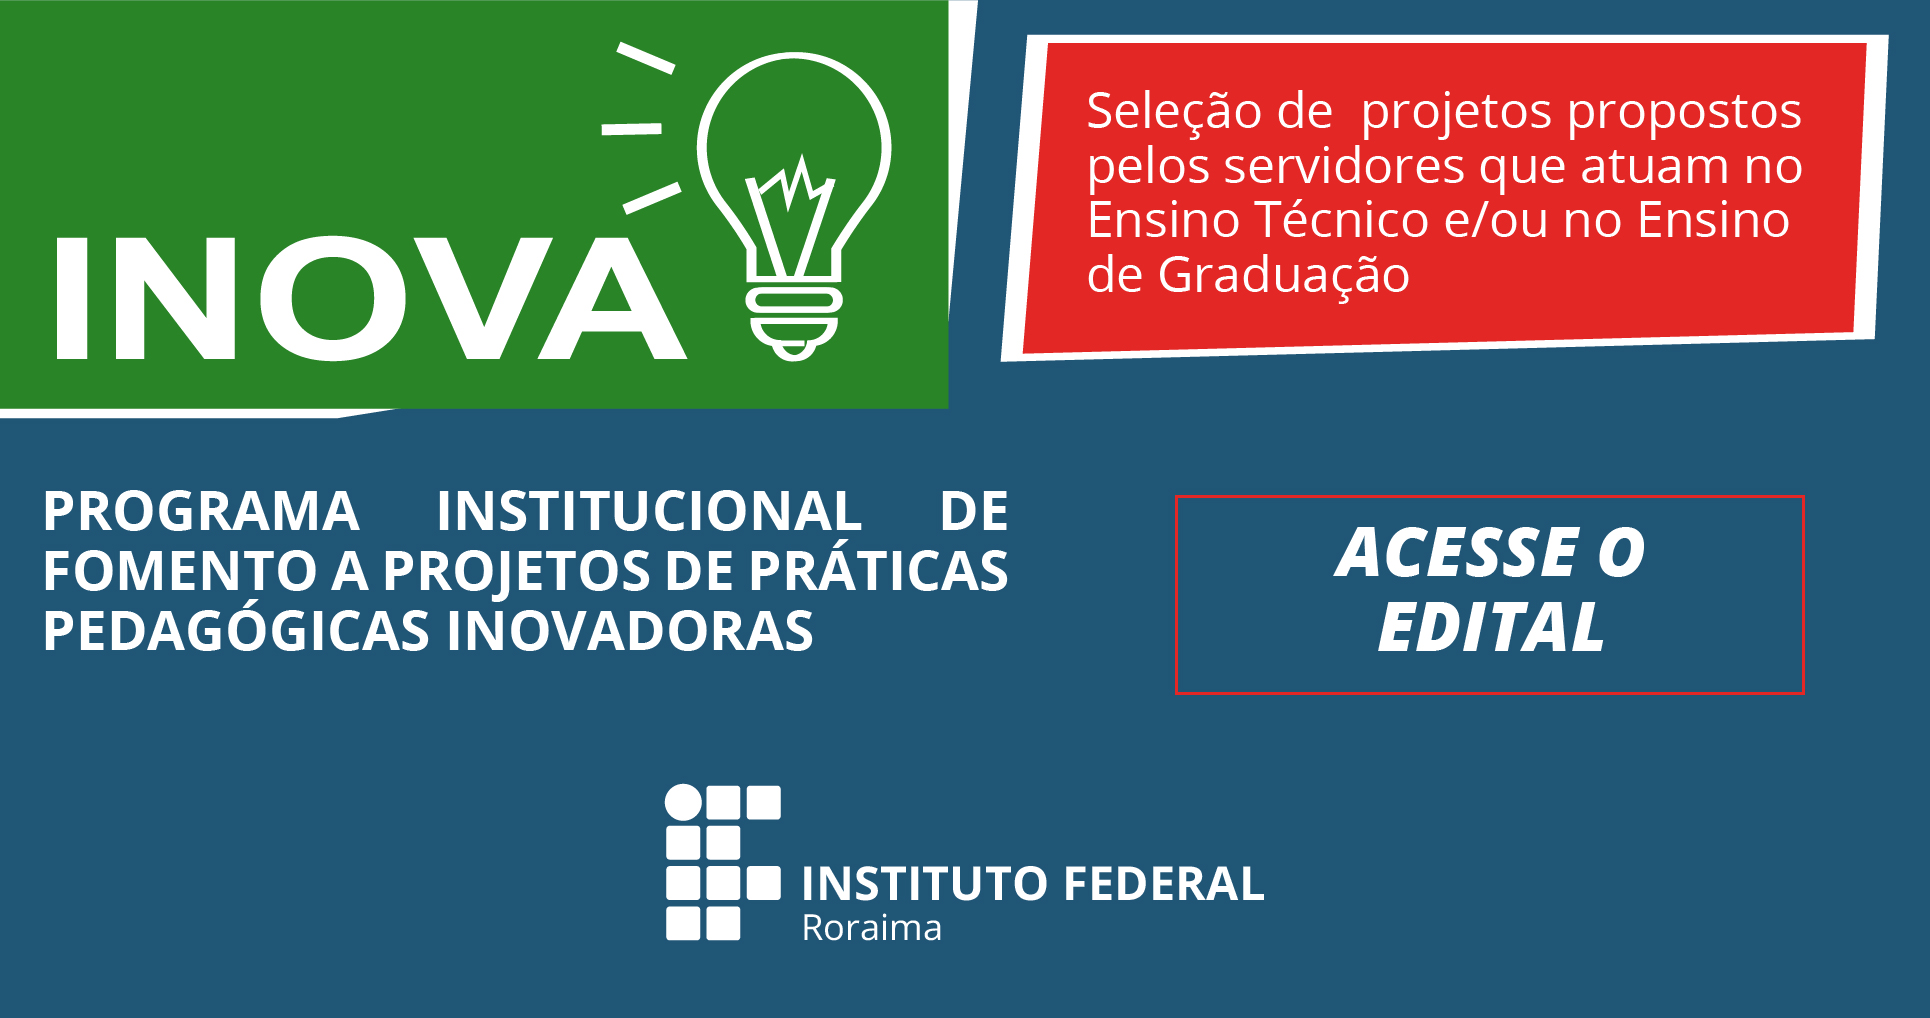 INOVA 2019 – Publicado edital para seleção de propostas de práticas pedagógicas inovadoras